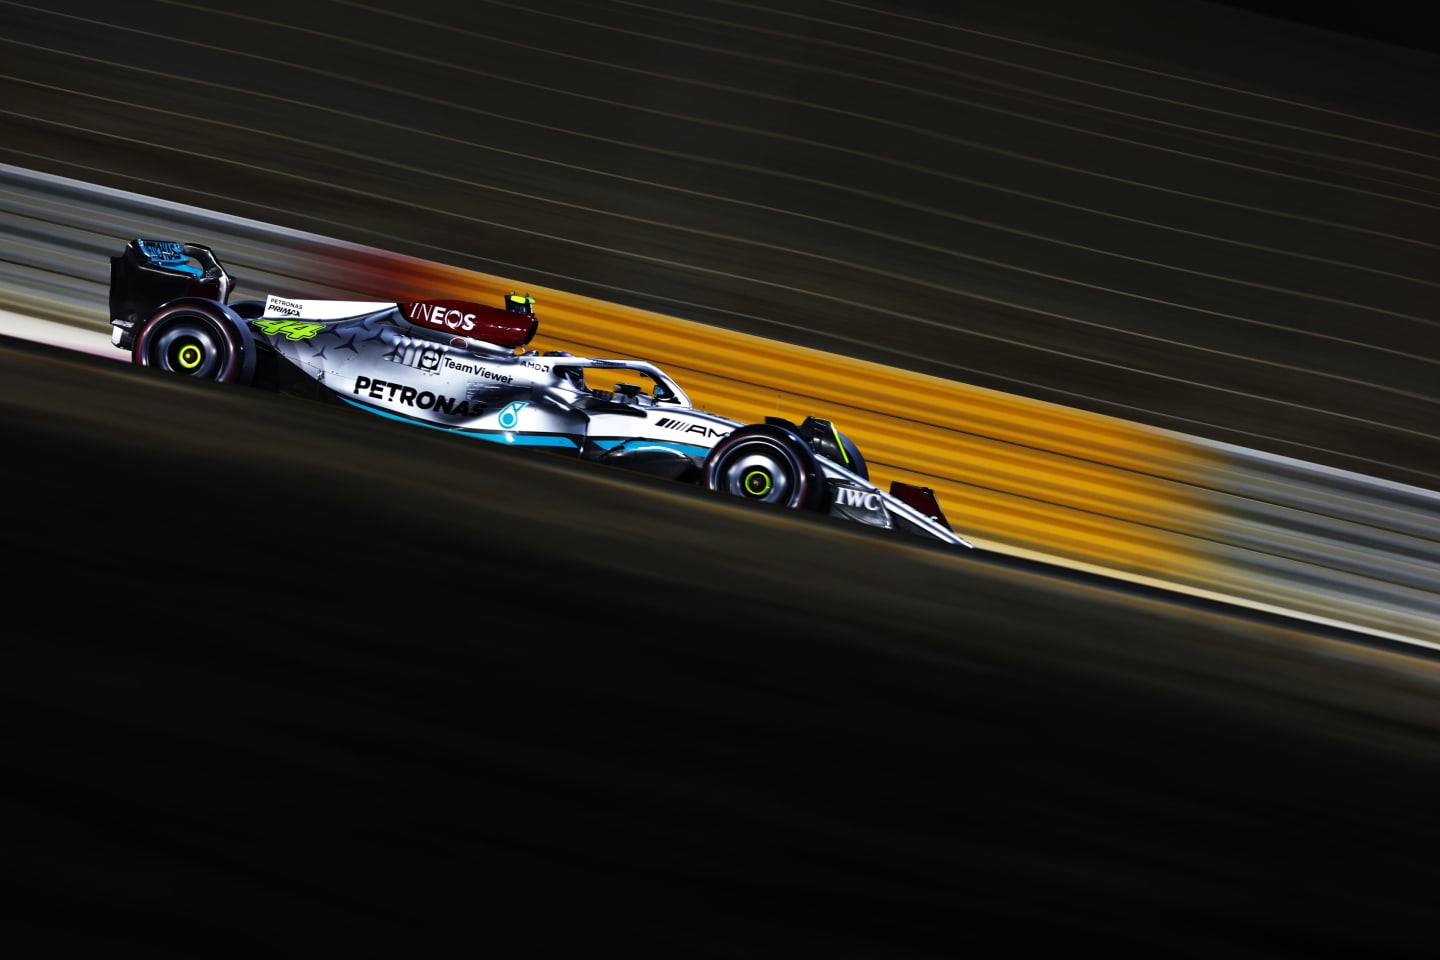 BAHRAIN, BAHRAIN - MARCH 11: Lewis Hamilton of Great Britain driving the (44) Mercedes AMG Petronas